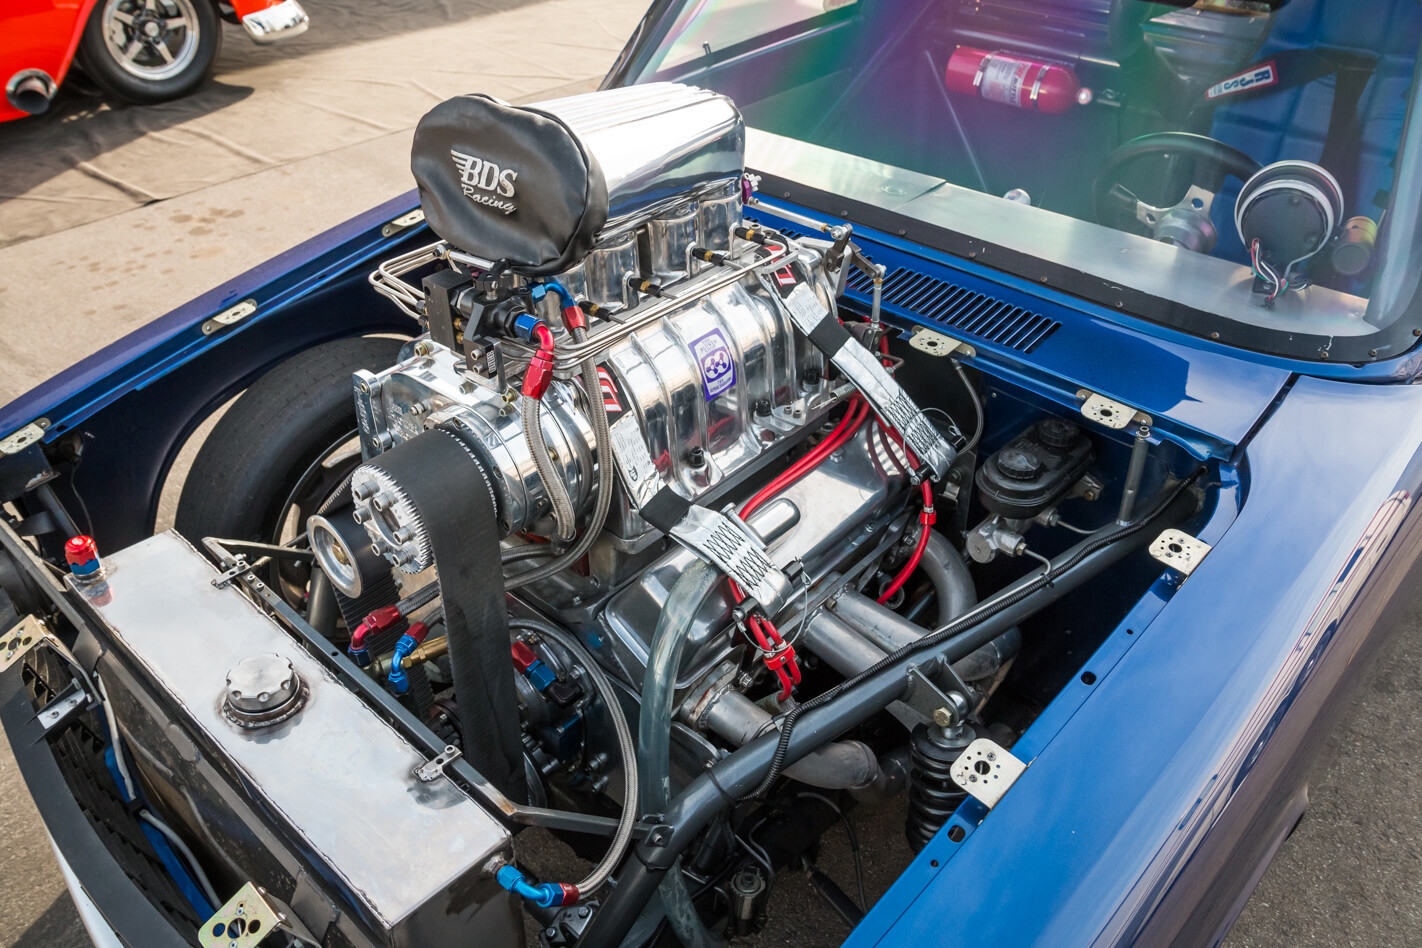 Scott Bisel's Chevy engine